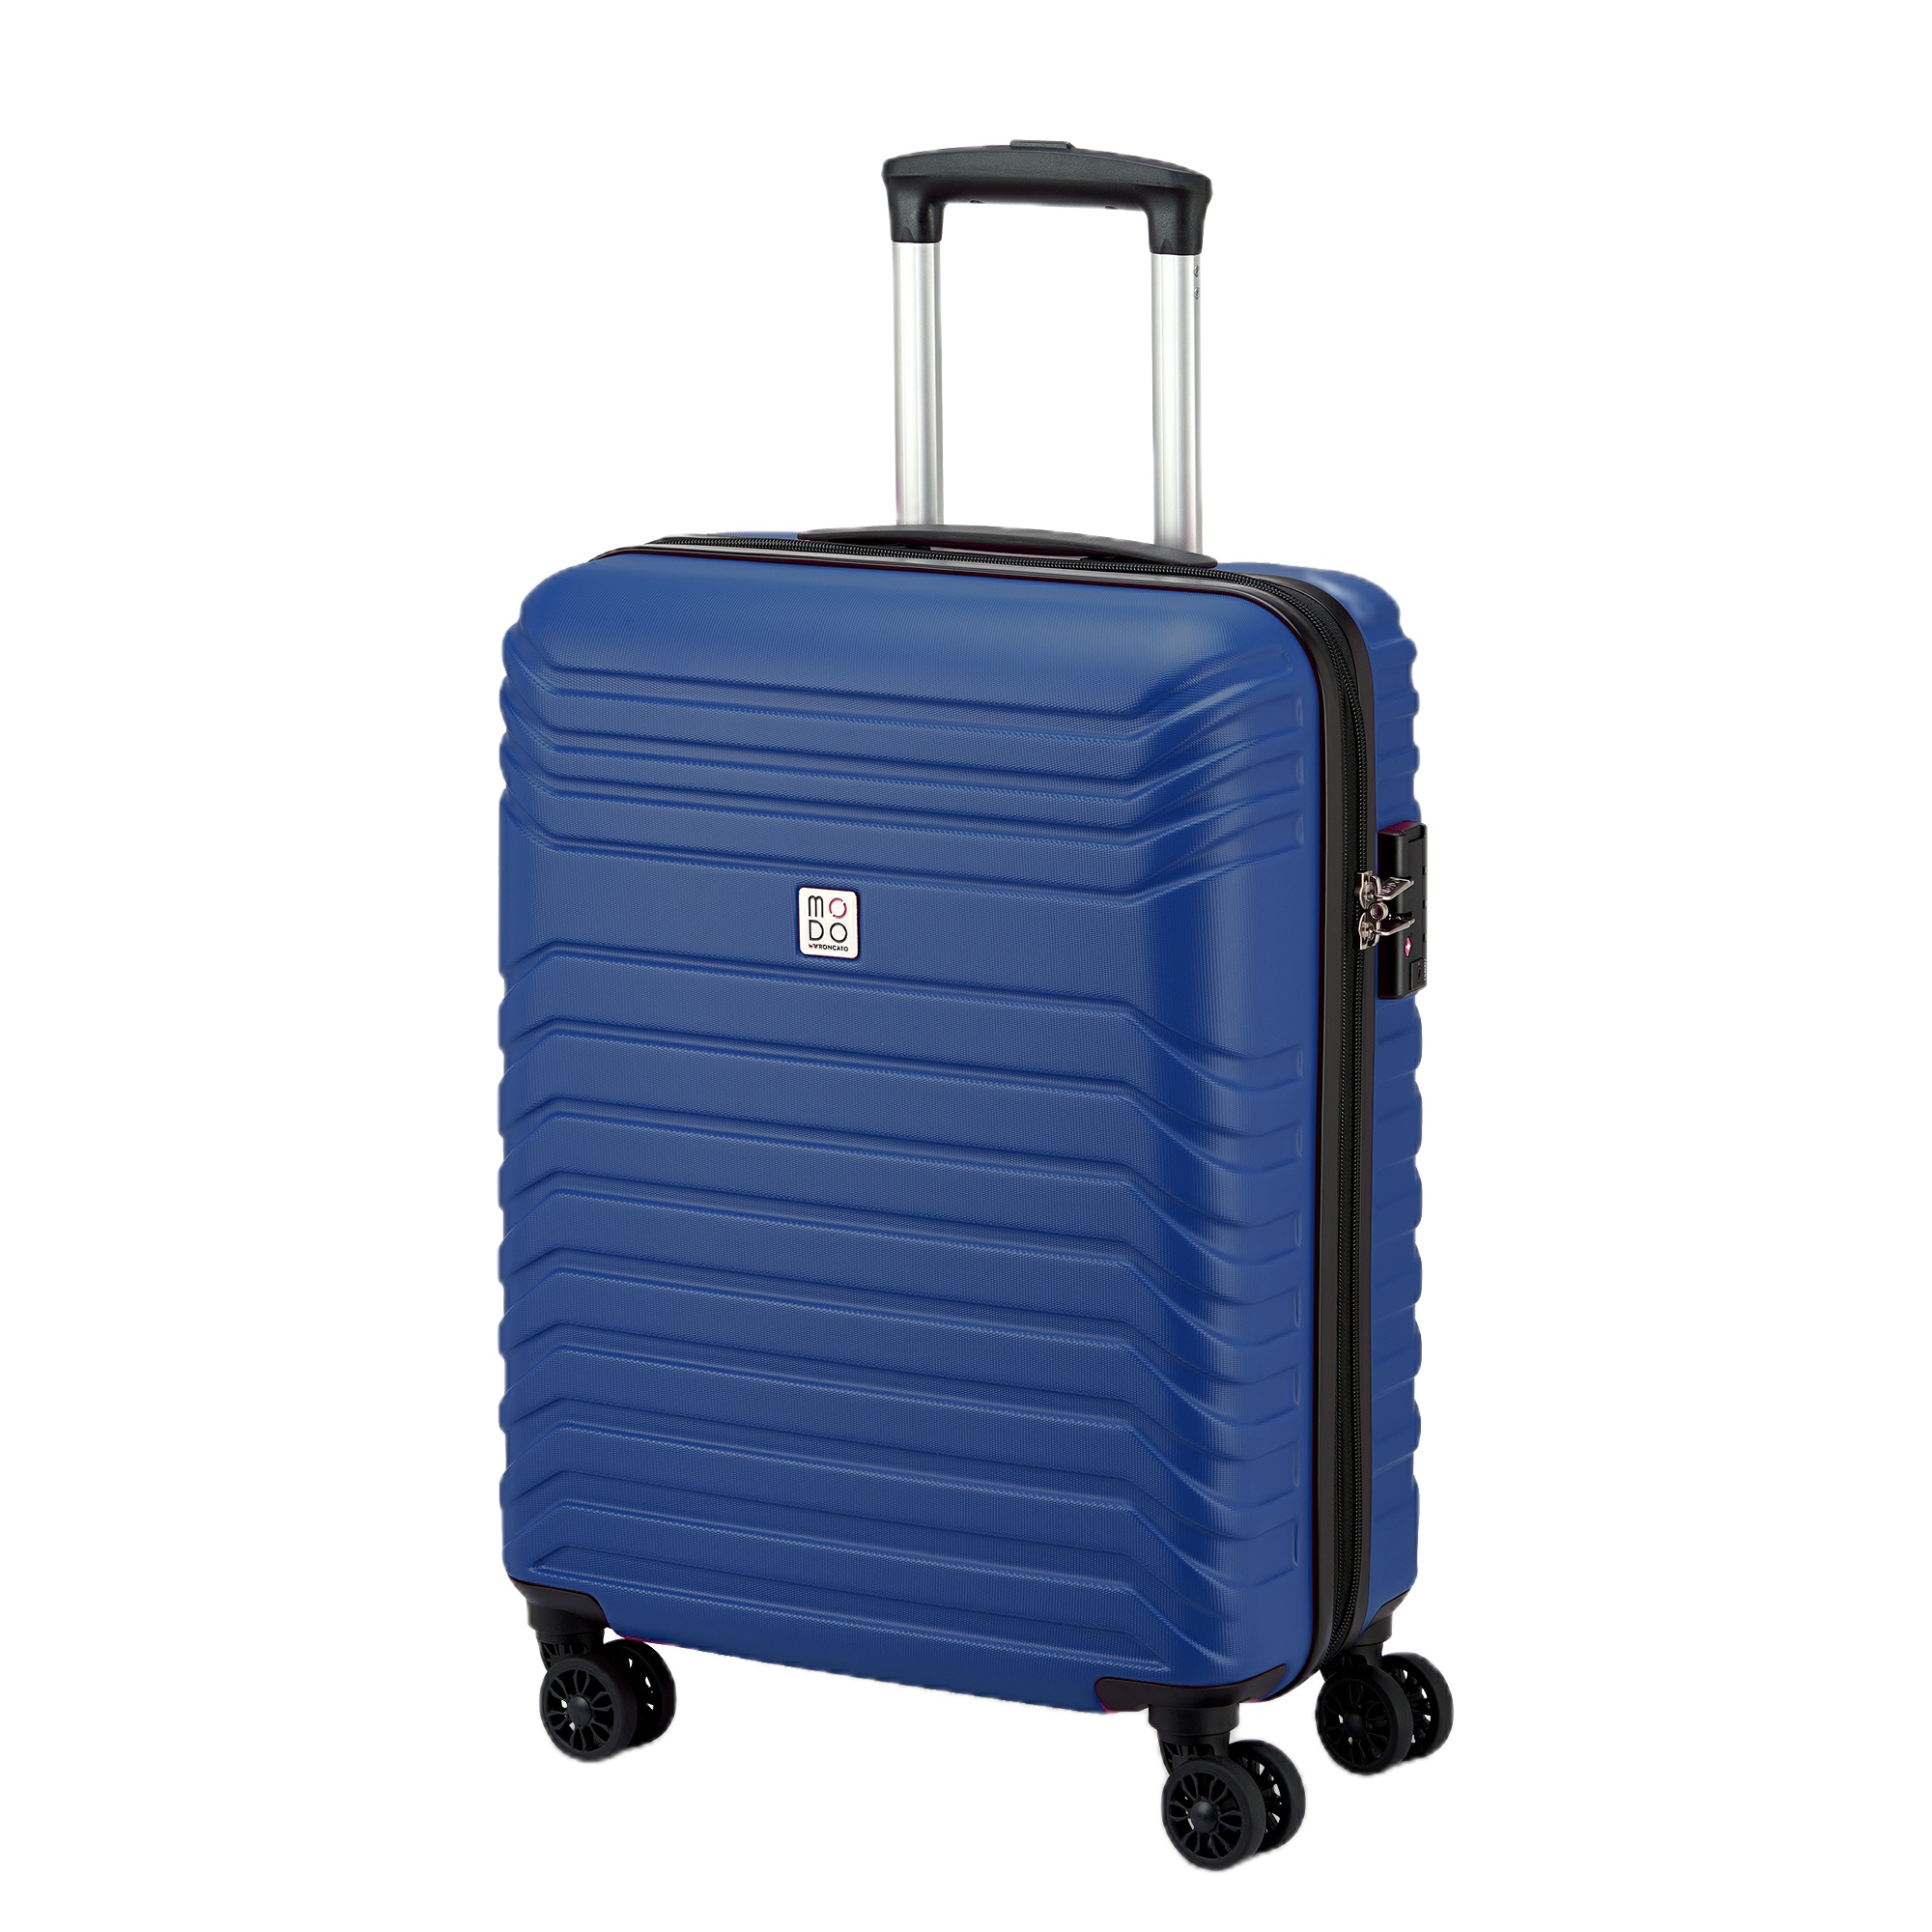 نکته خرید - قیمت روز چمدان رونکاتو مدل فلوکس کد 423533 سایز کوچک خرید